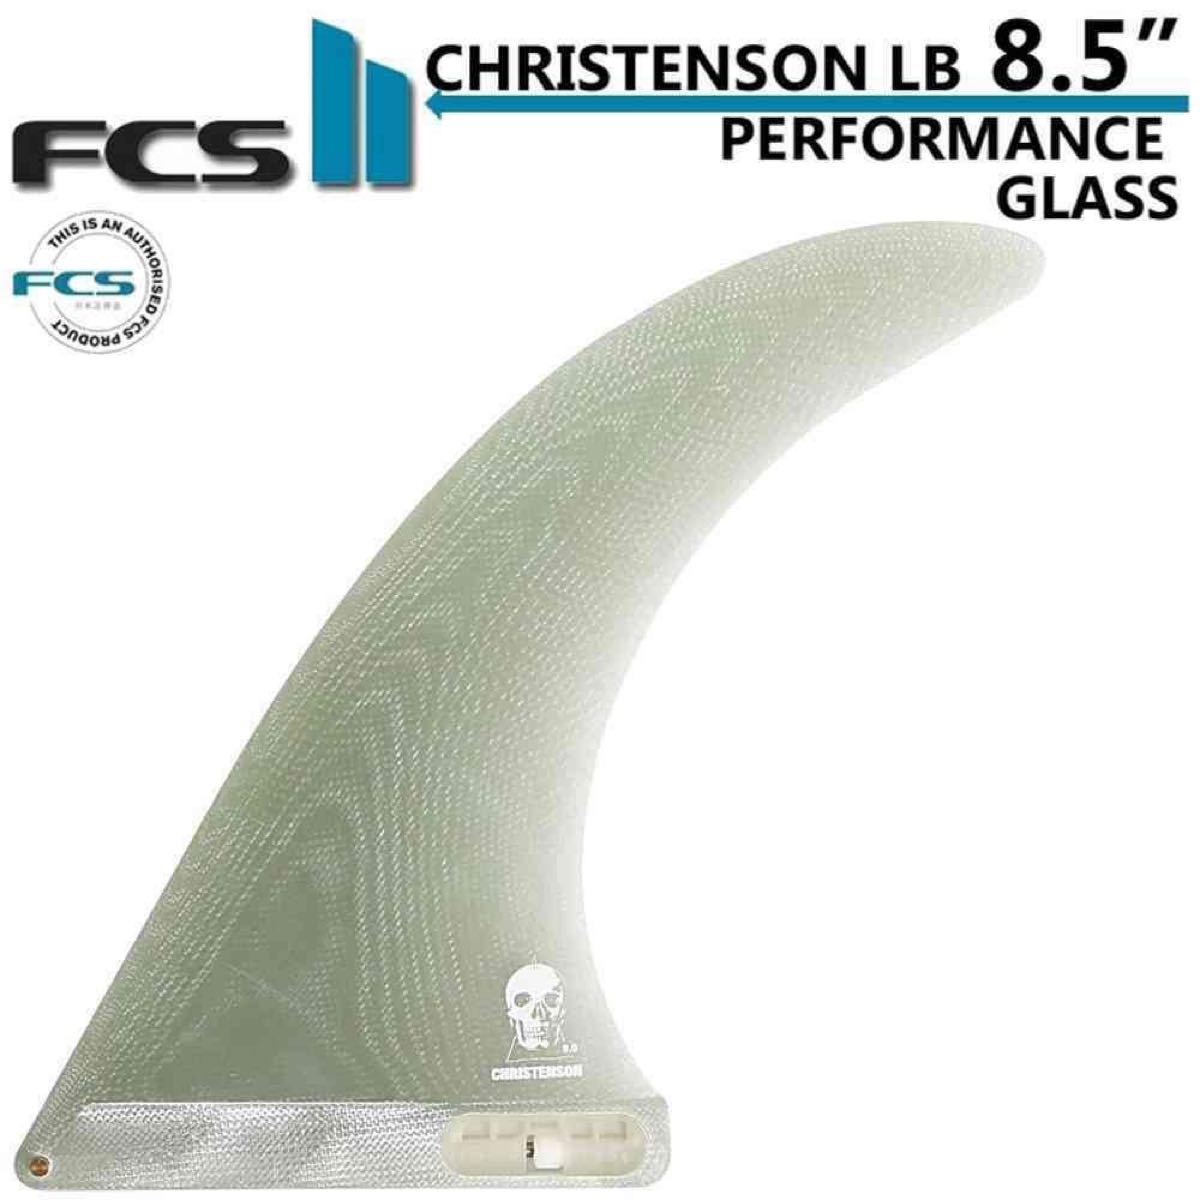 FCS2 FCS 2 サーフィン フィン クリステンソン ロングボード 8.5 